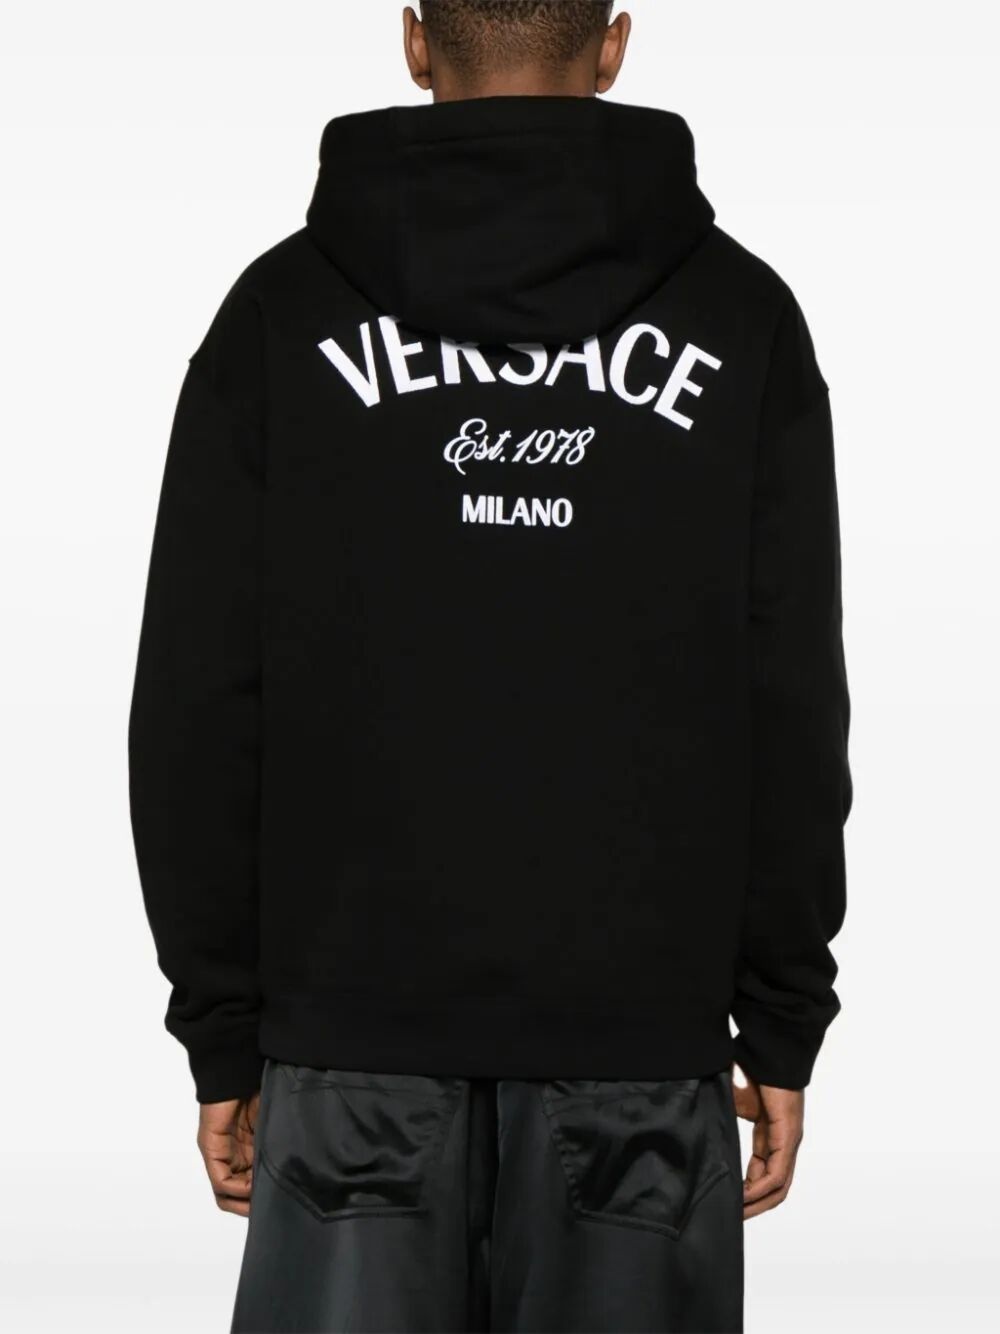 Versace milano hoodie - 4